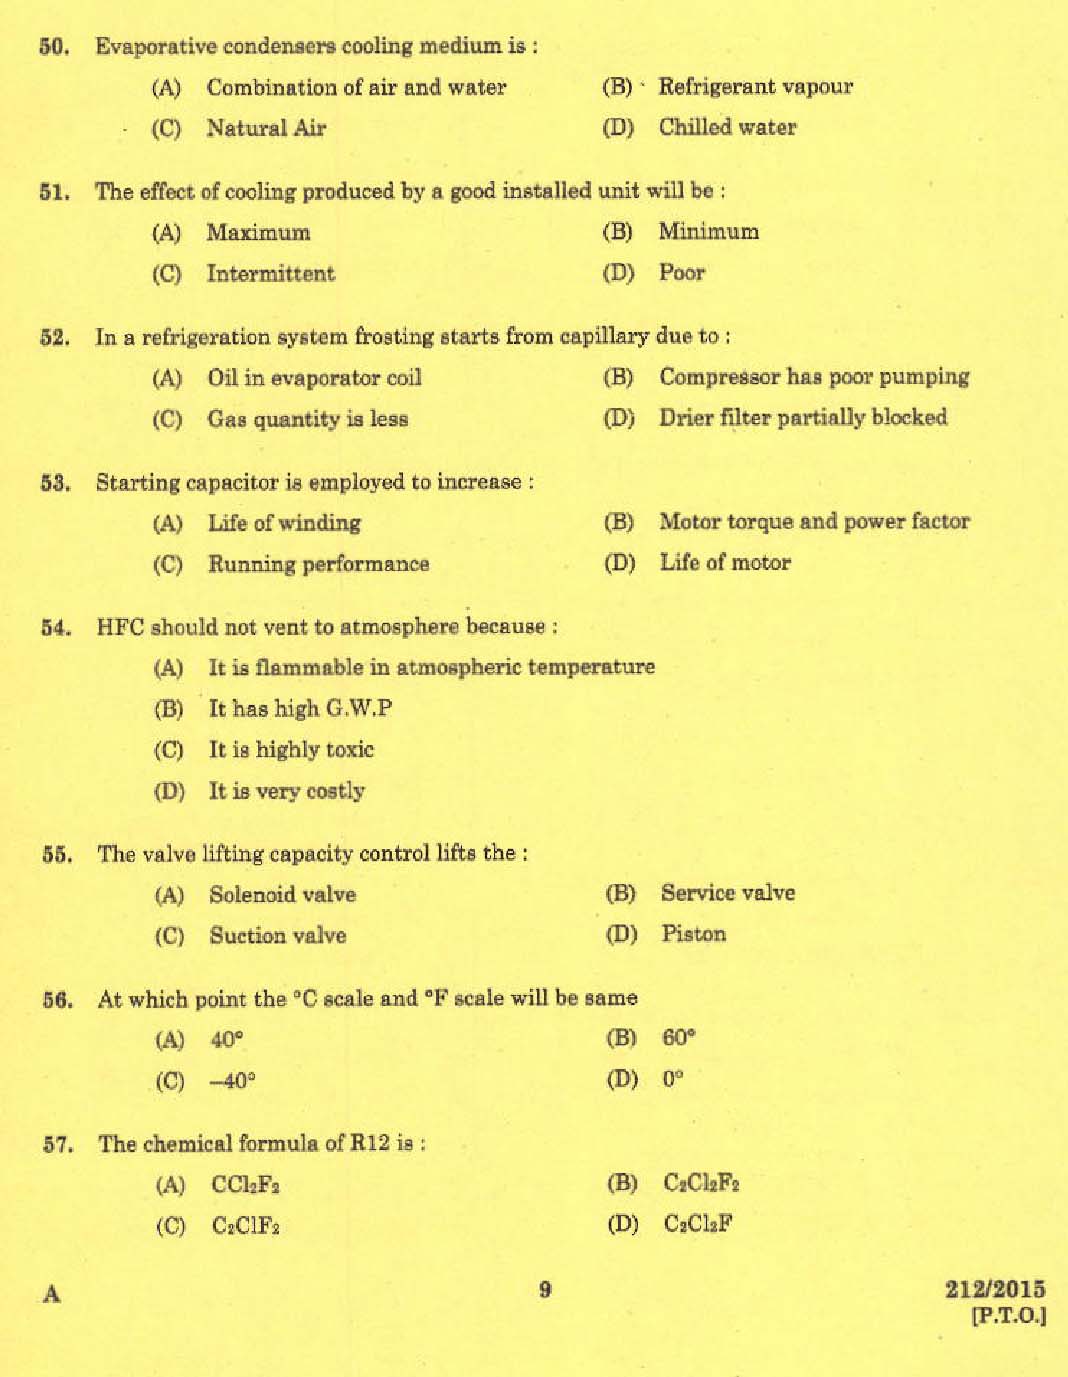 KPSC Refrigeration Mechanic Exam 2015 Code 2122015 7